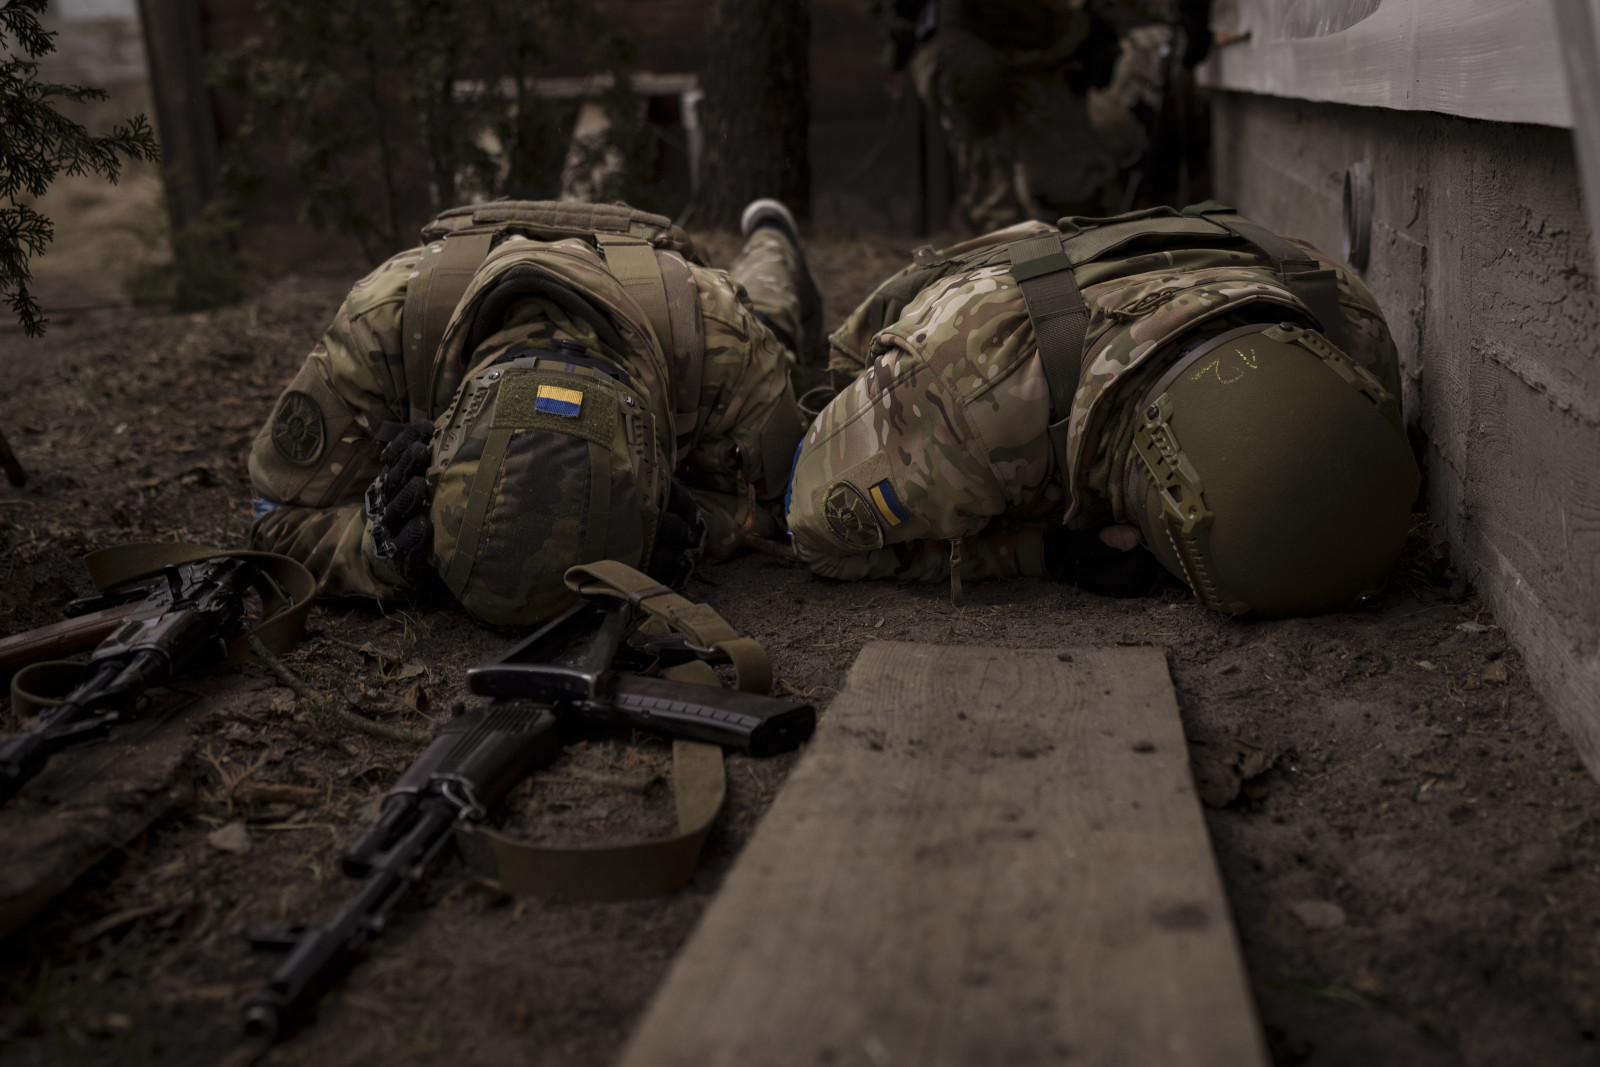 Ukrainische Soldaten gehen vor Artilleriebeschuss in Deckung, Irpin bei Kiew am 13. März 2022.